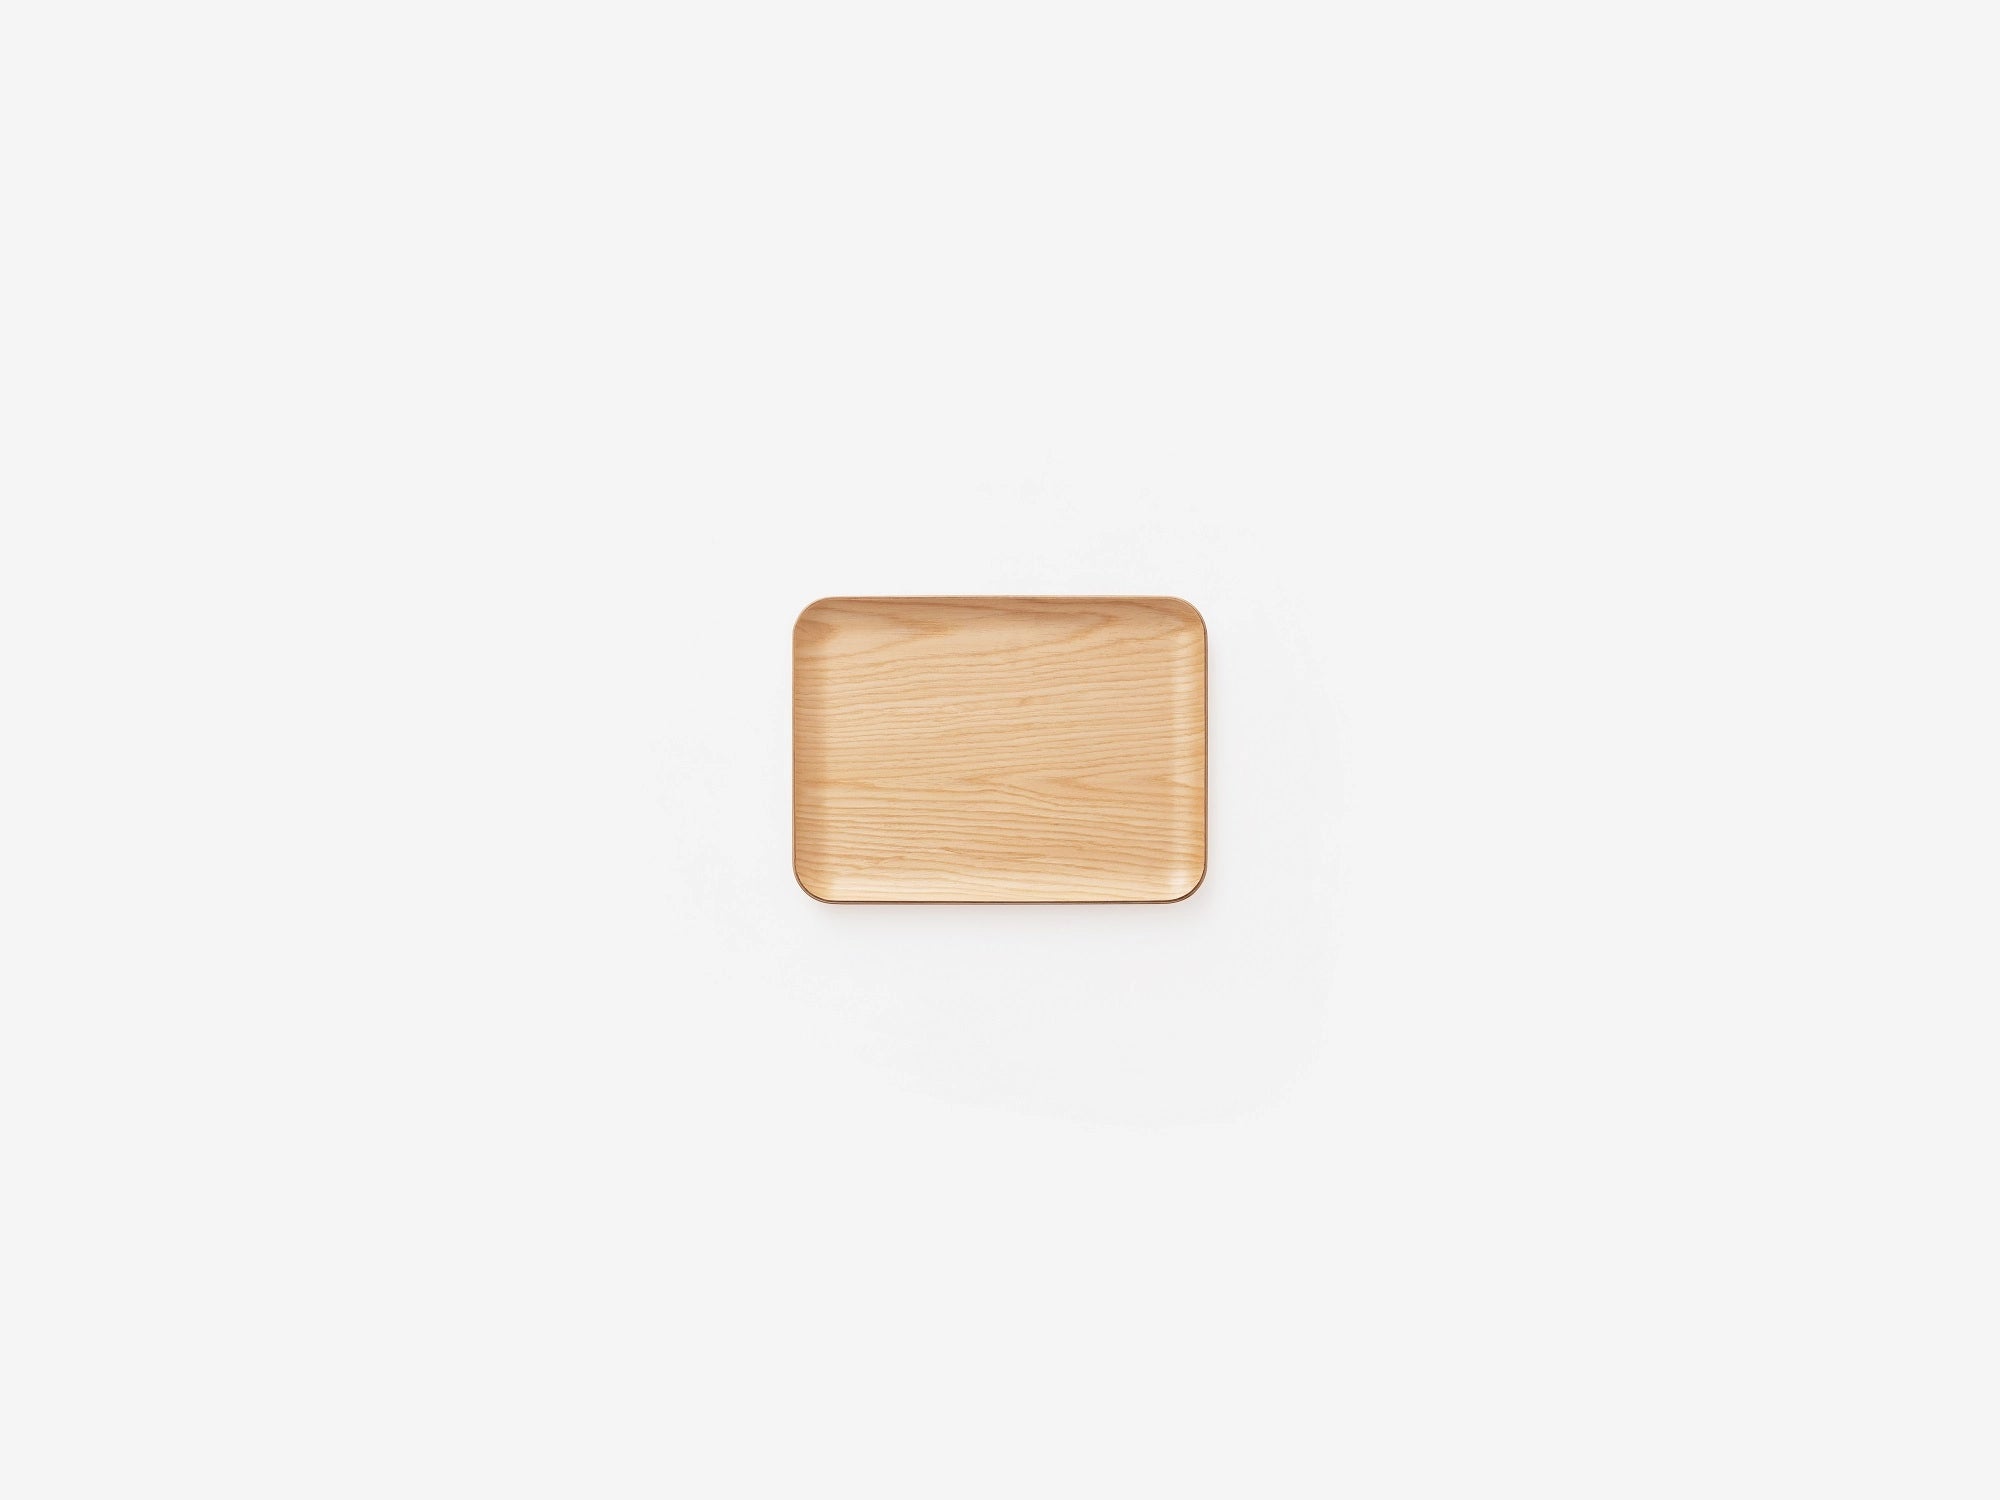 Fika Tray | Wood tray